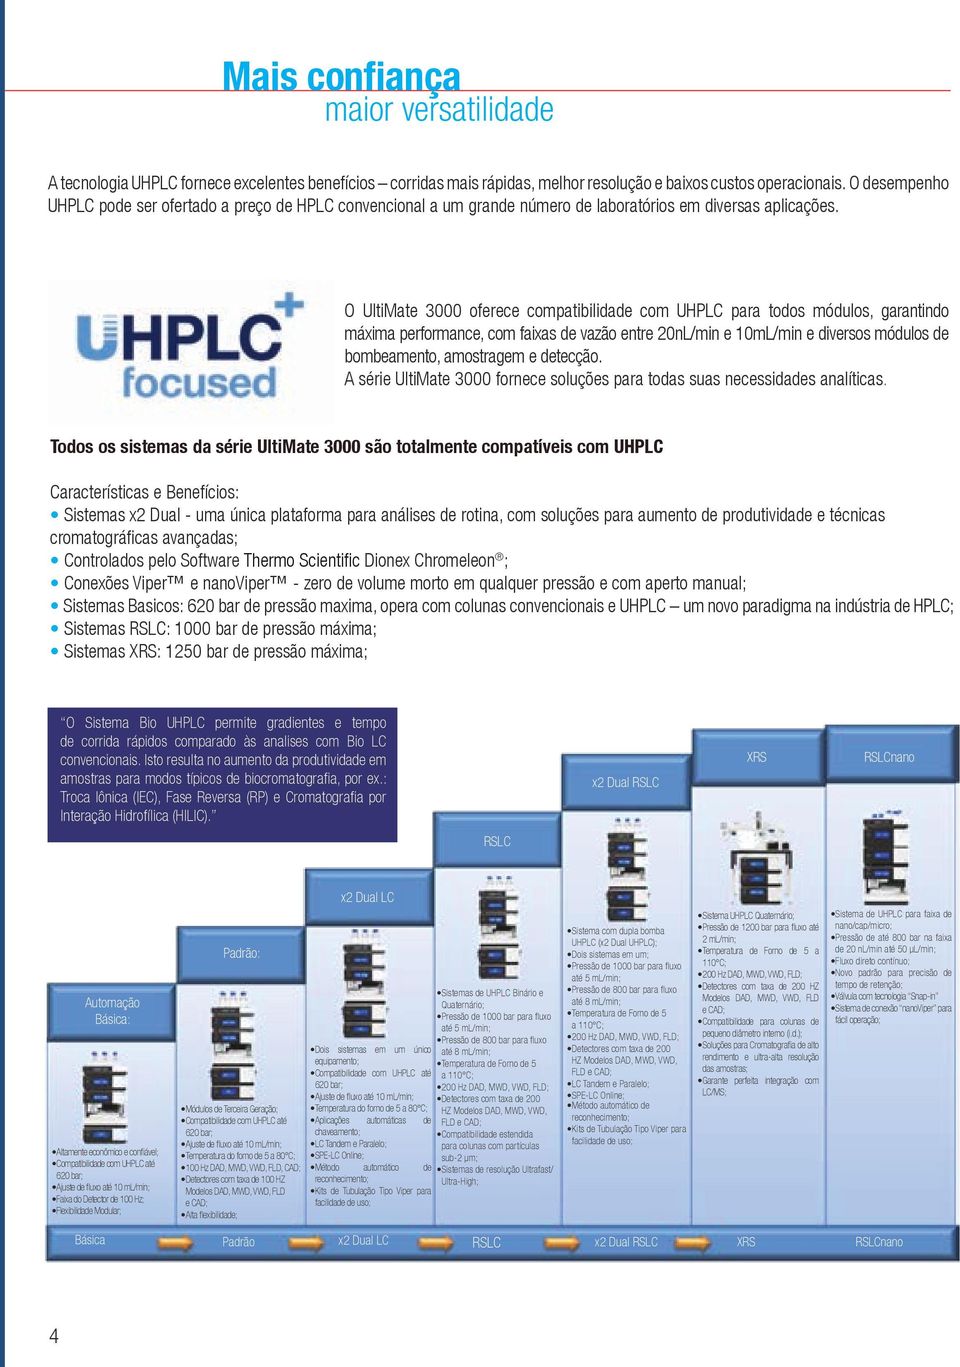 O UltiMate 3000 oferece compatibilidade com UHPLC para todos módulos, garantindo máxima performance, com faixas de vazão entre 20nL/min e 10mL/min e diversos módulos de bombeamento, amostragem e